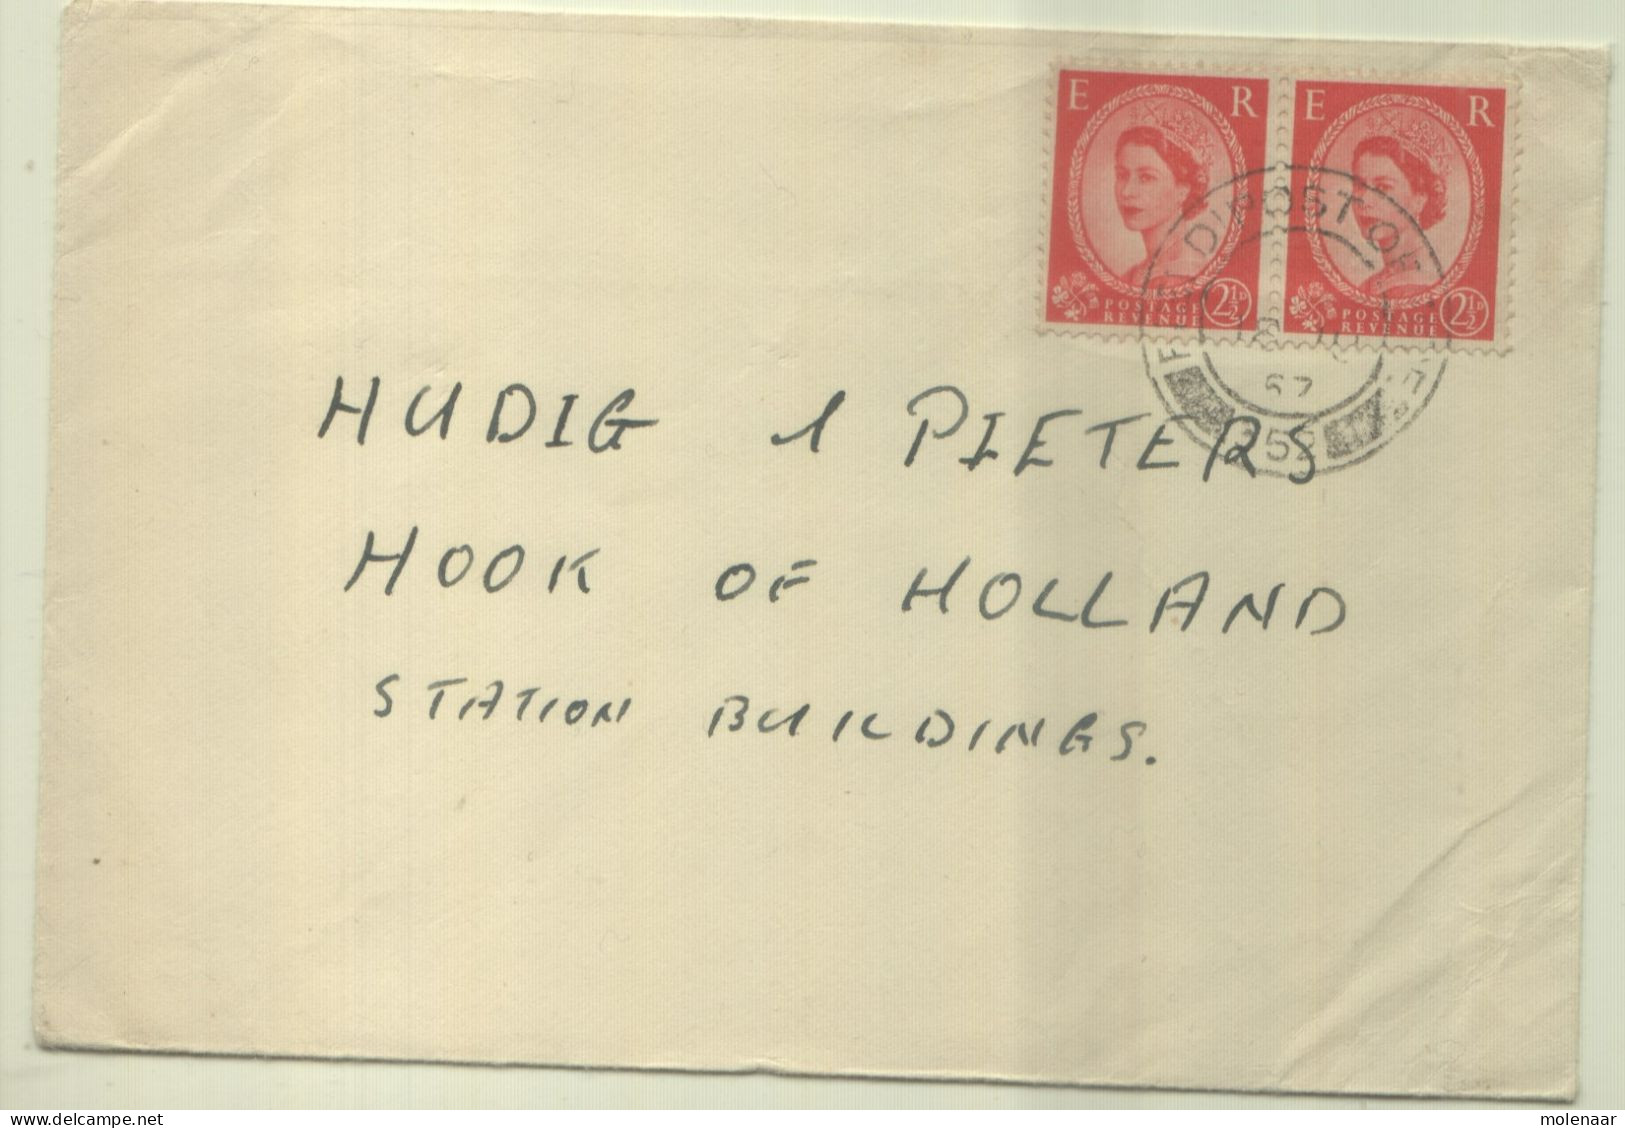 Postzegels > Europa > Groot-Brittannië > 1952-2022 Elizabeth II > 1971-1980  > Brief Met 2 Postzegels (16817) - Covers & Documents